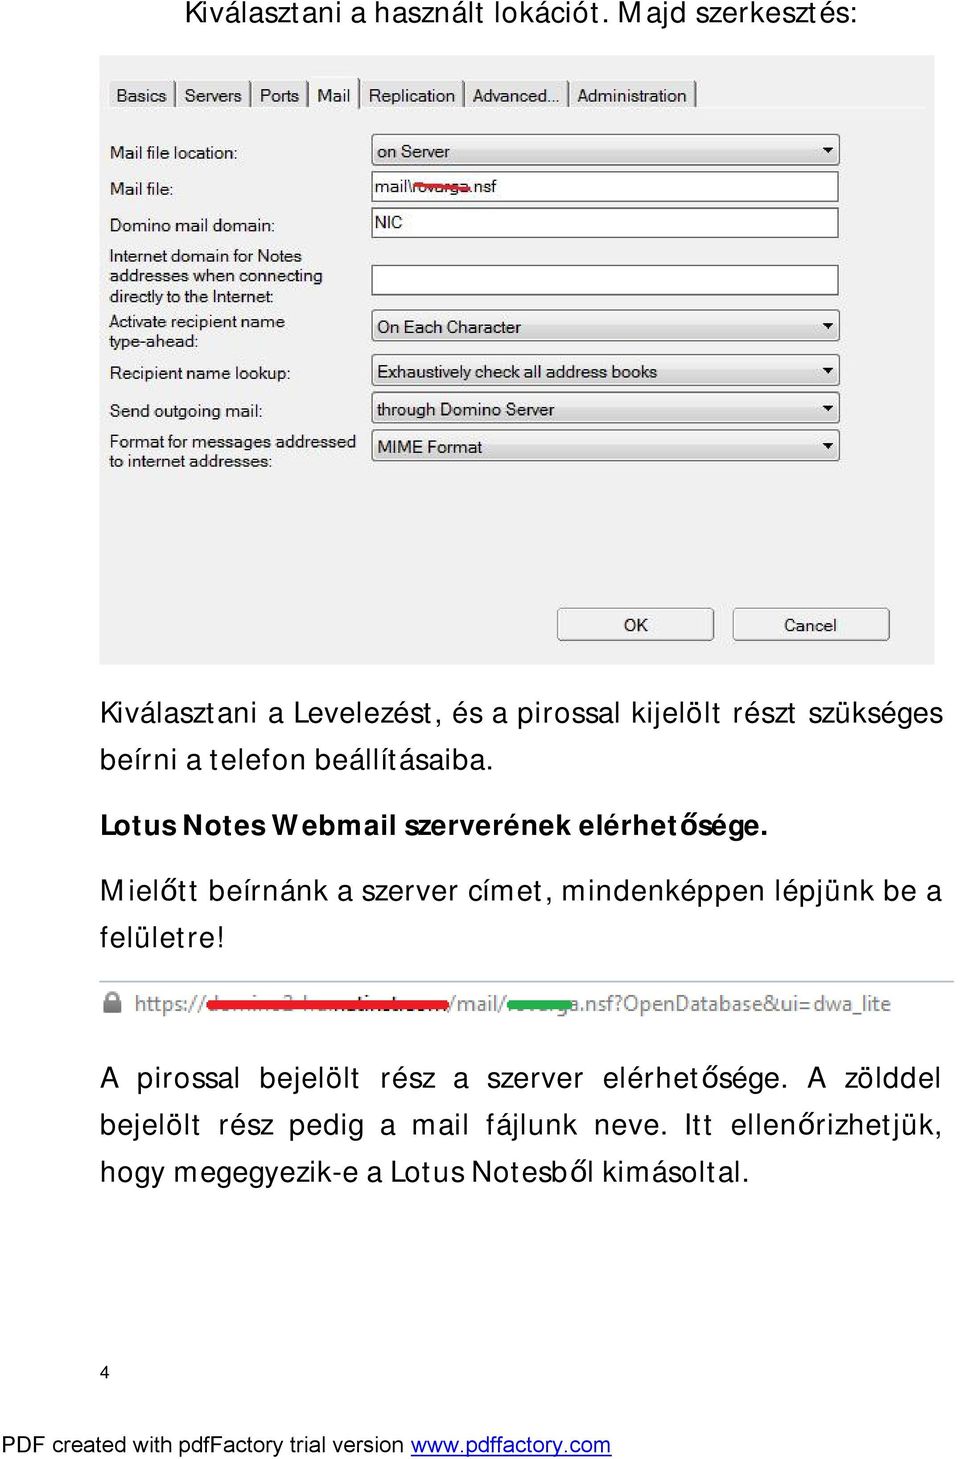 beállításaiba. Lotus Notes Webmail szerverének elérhetősége.